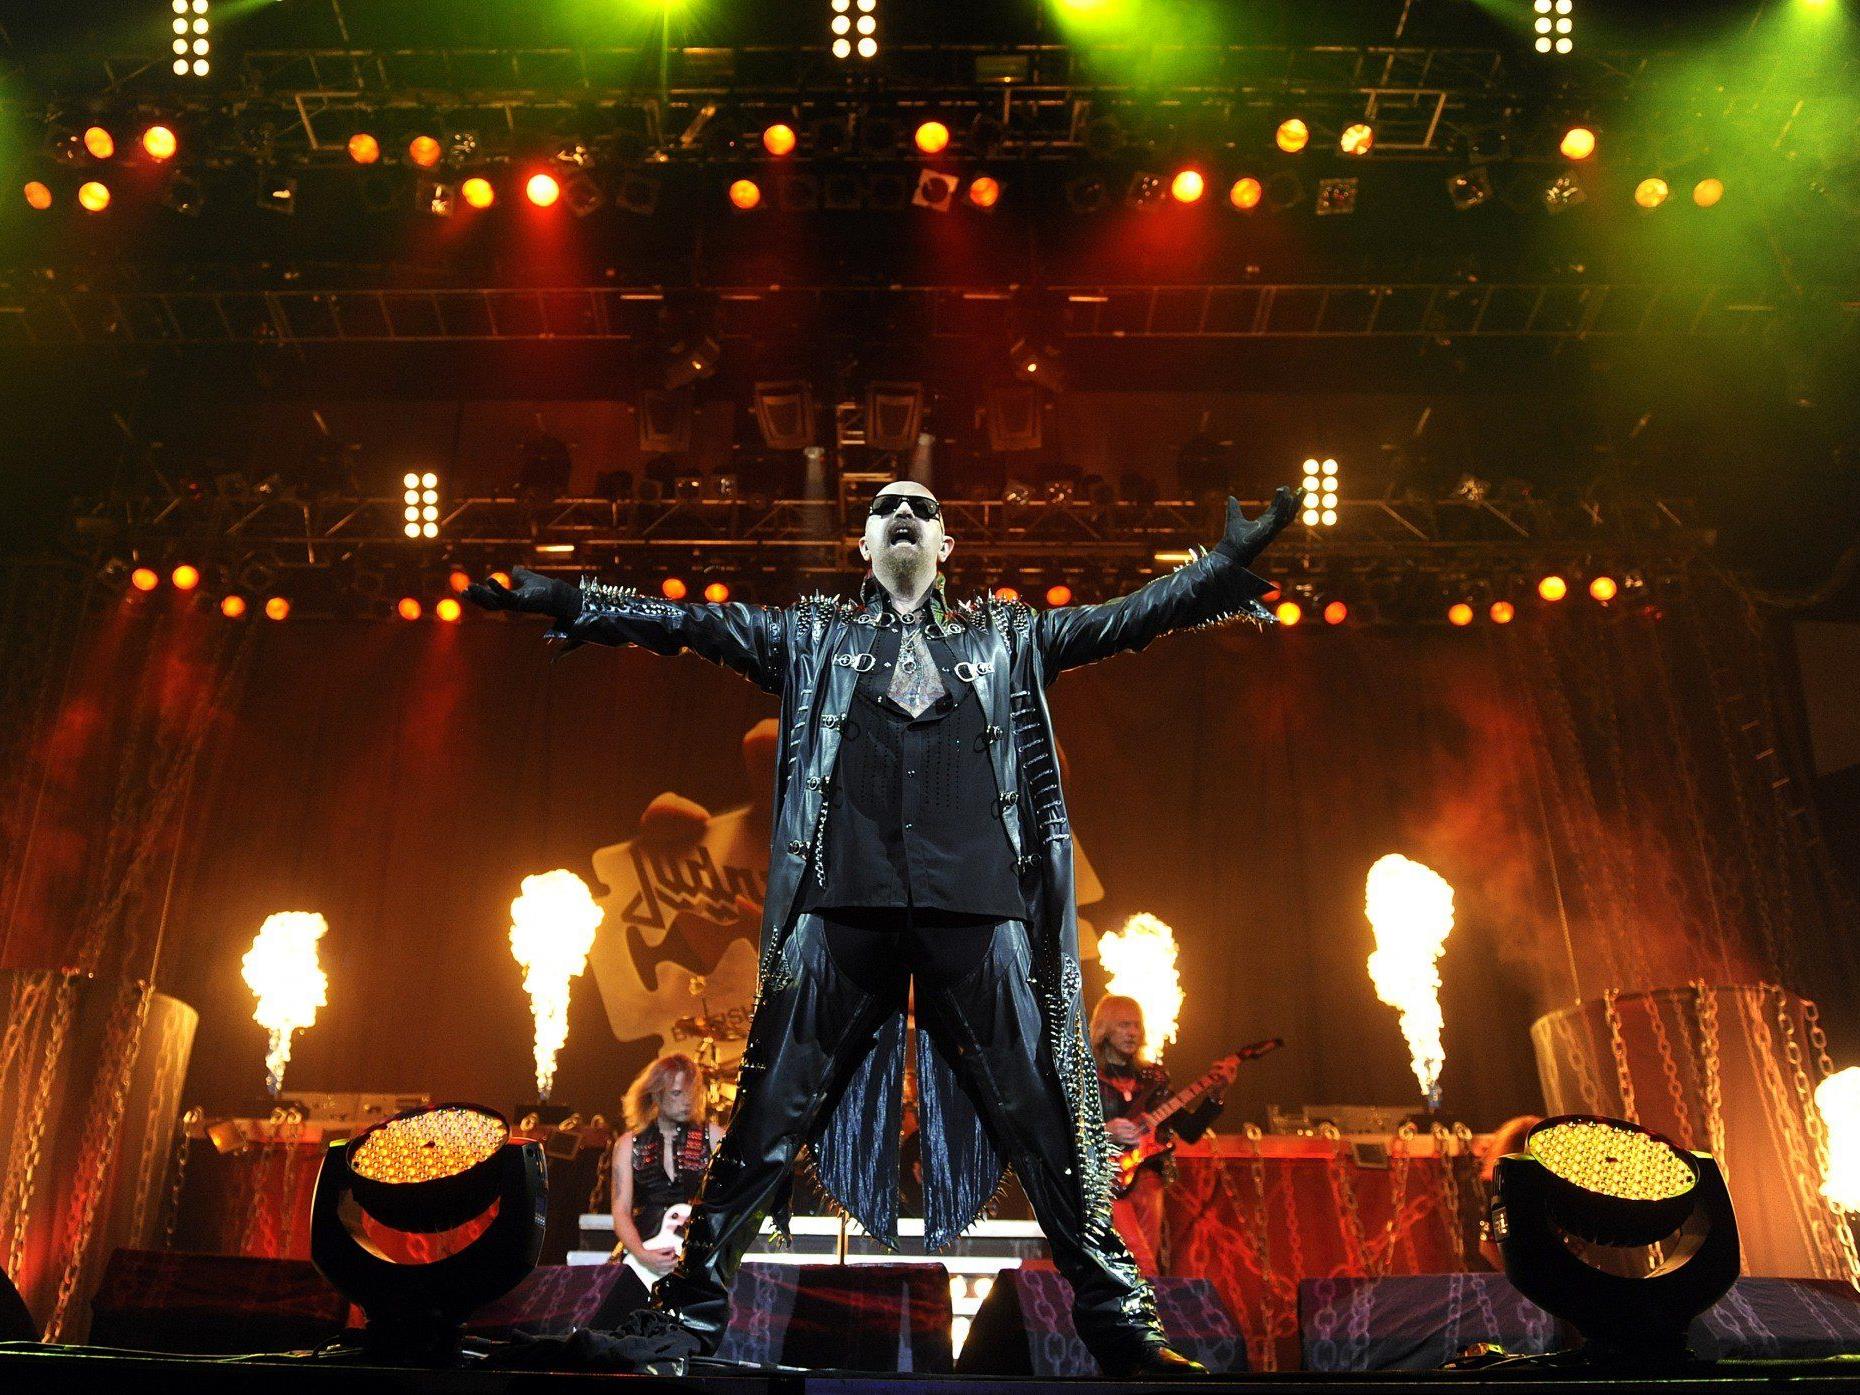 Judas Priest veröffentlichen ihr 17. Album "Redeemer of Souls" am 11. Juli 2014.